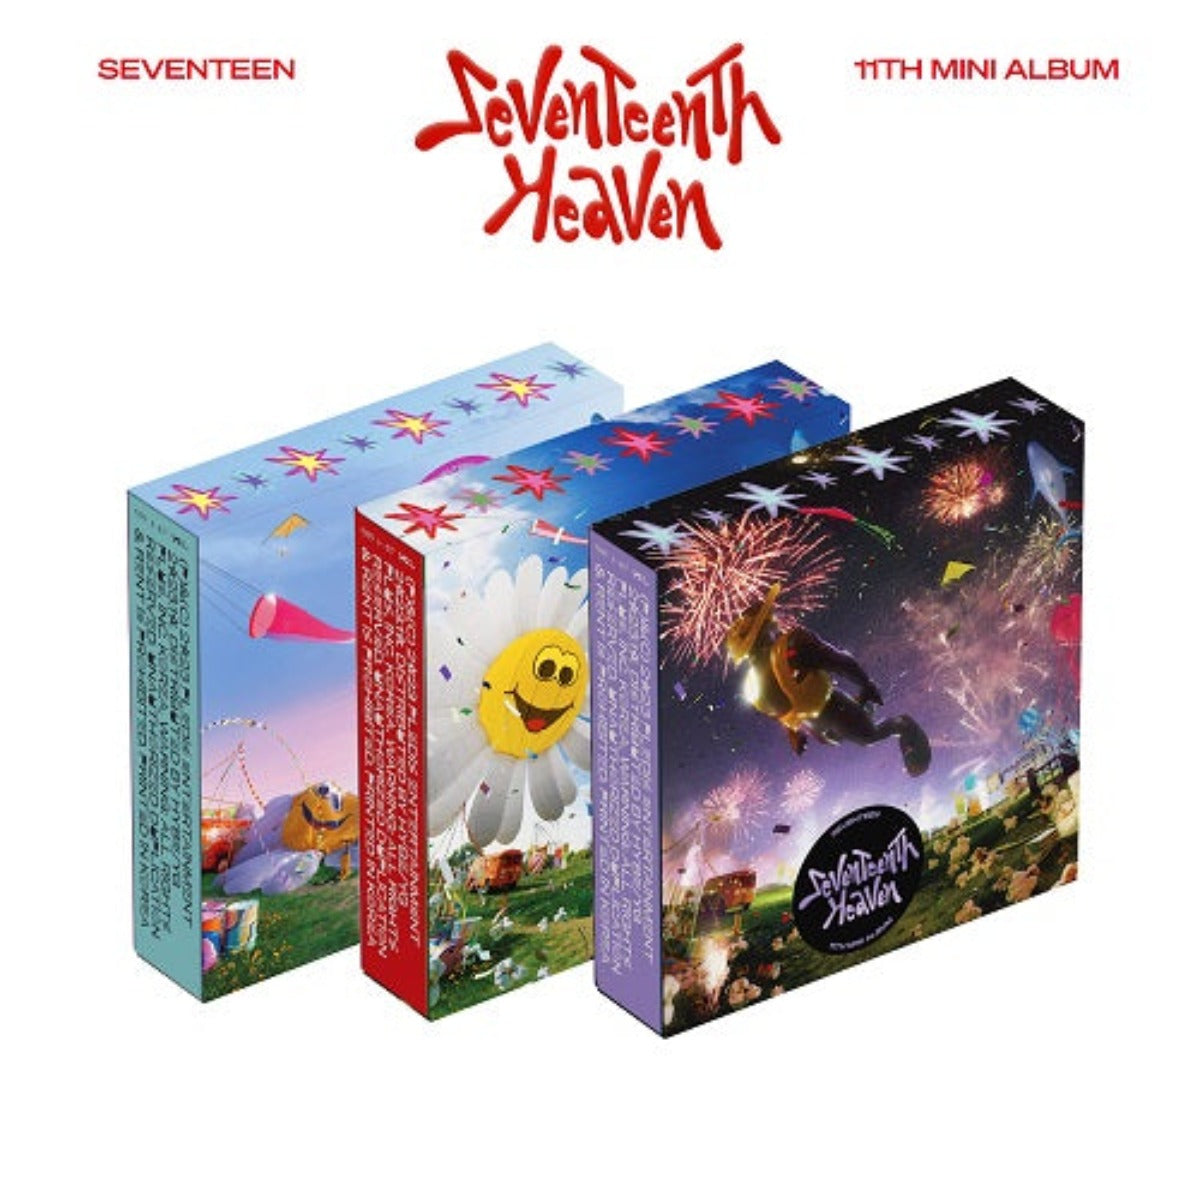 SEVENTEEN Mini Album Vol. 11 - Seventeenth Heaven